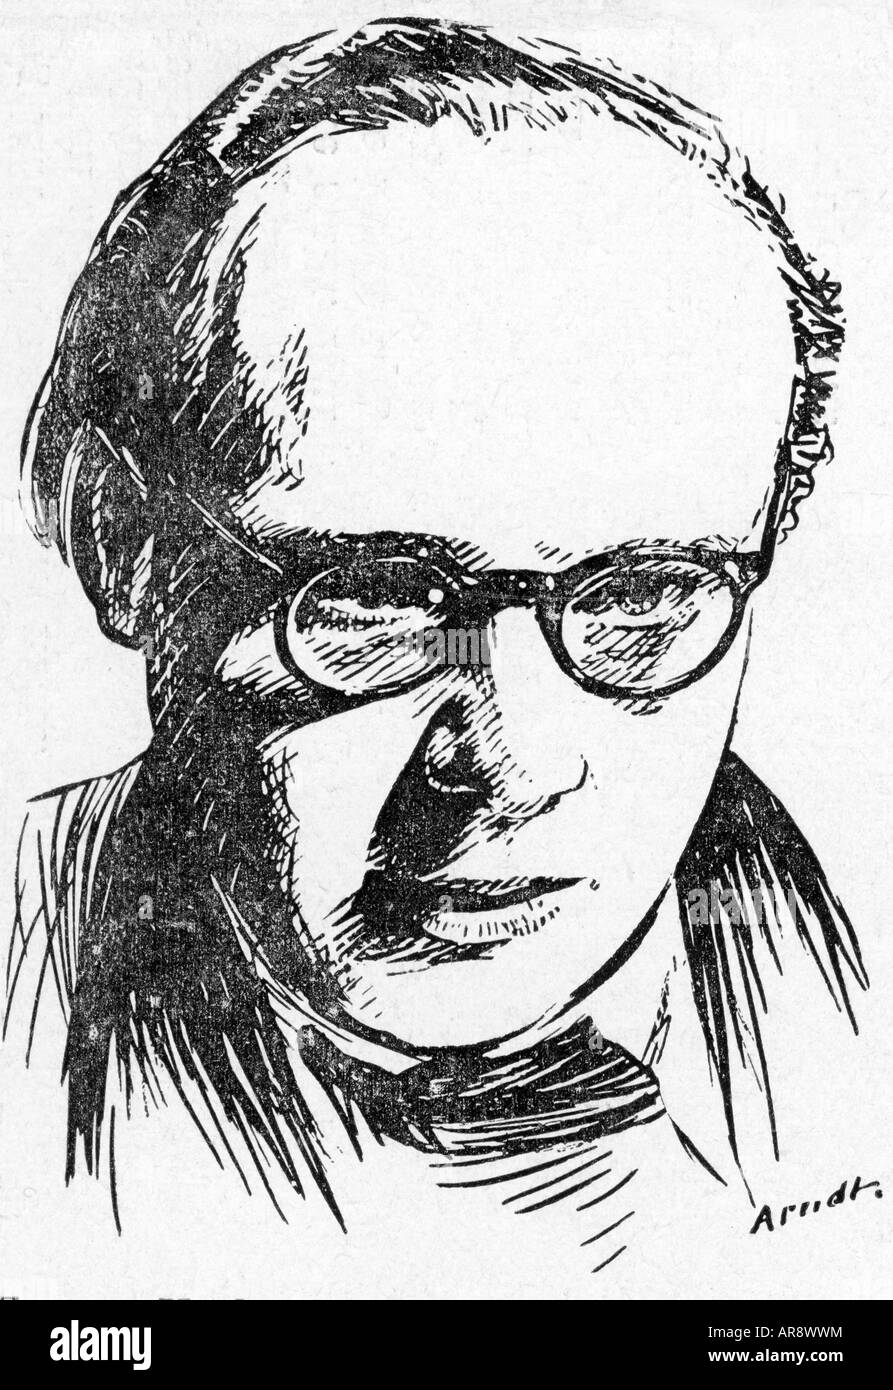 York, Eugene, 26.11.1912 - 18.11.1991, director alemán de origen ruso, retrato, dibujo de Arndt, Foto de stock